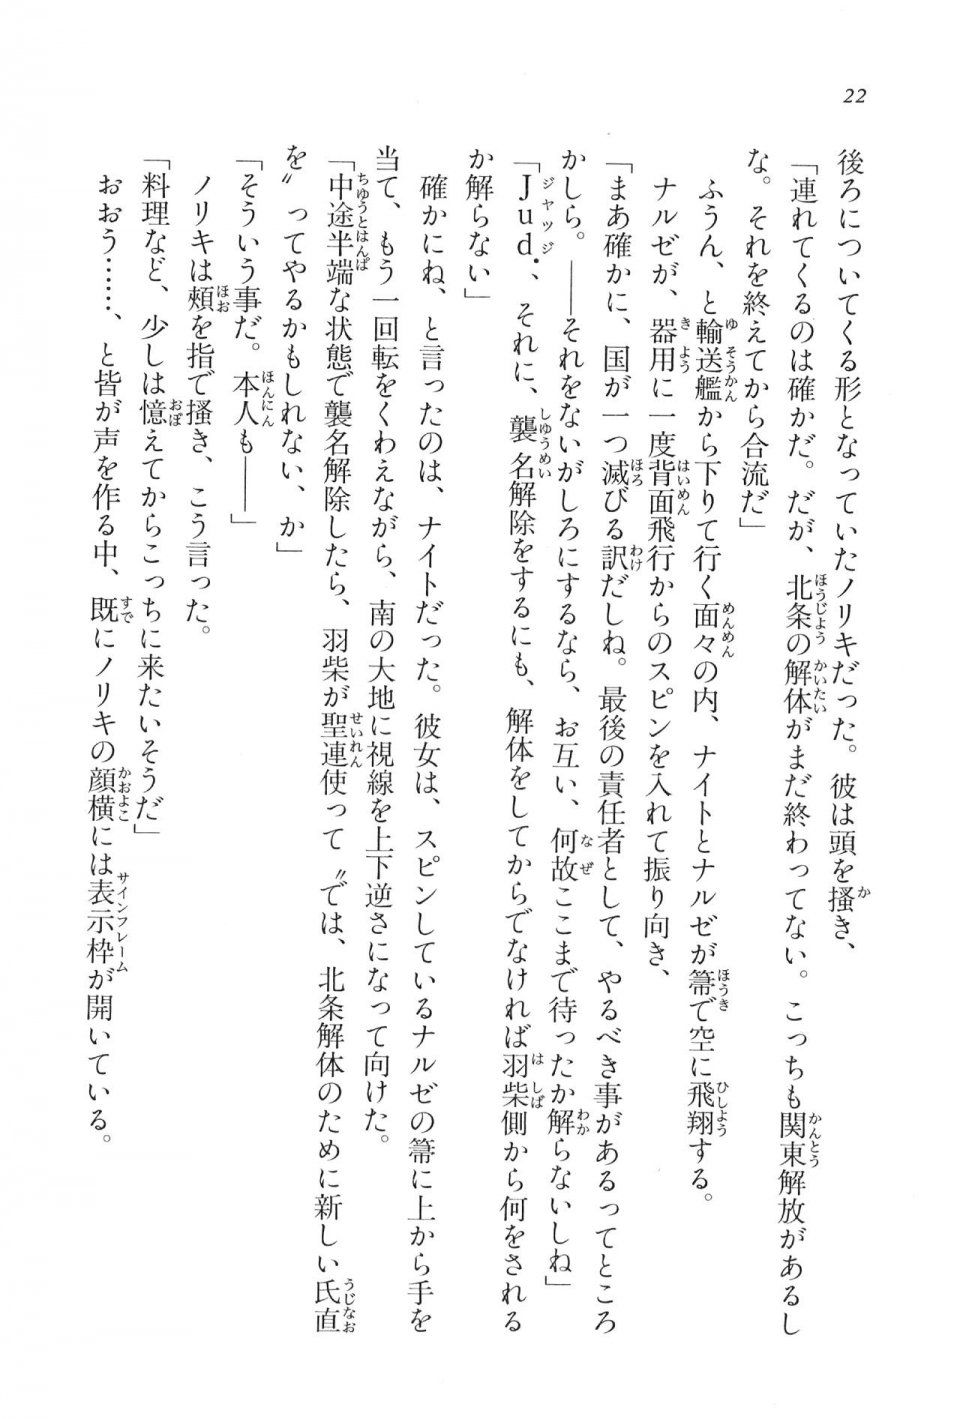 Kyoukai Senjou no Horizon LN Vol 16(7A) - Photo #22